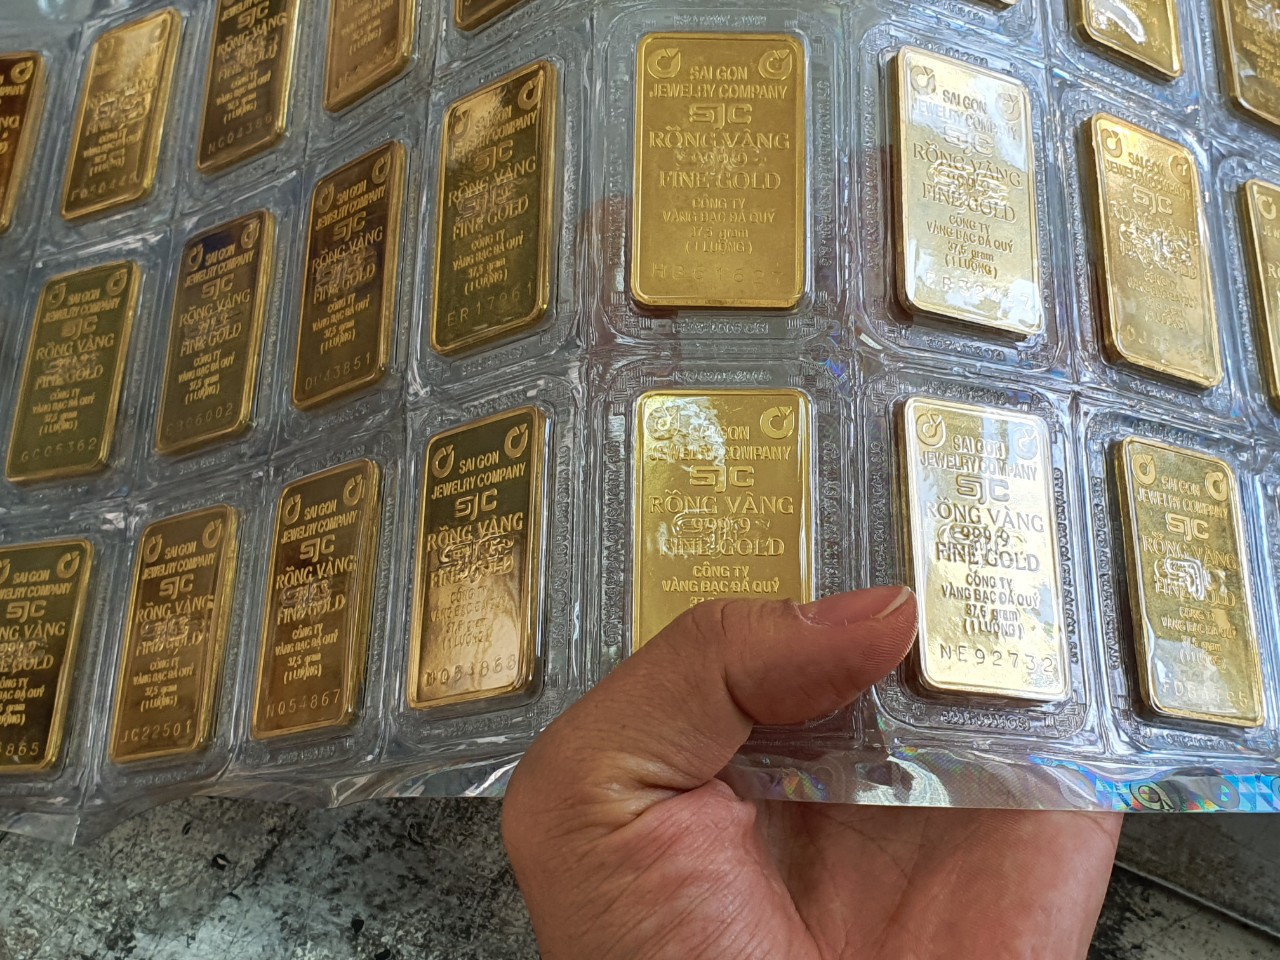 
Giá vàng trong nước lại mất mốc 67 triệu đồng/lượng
